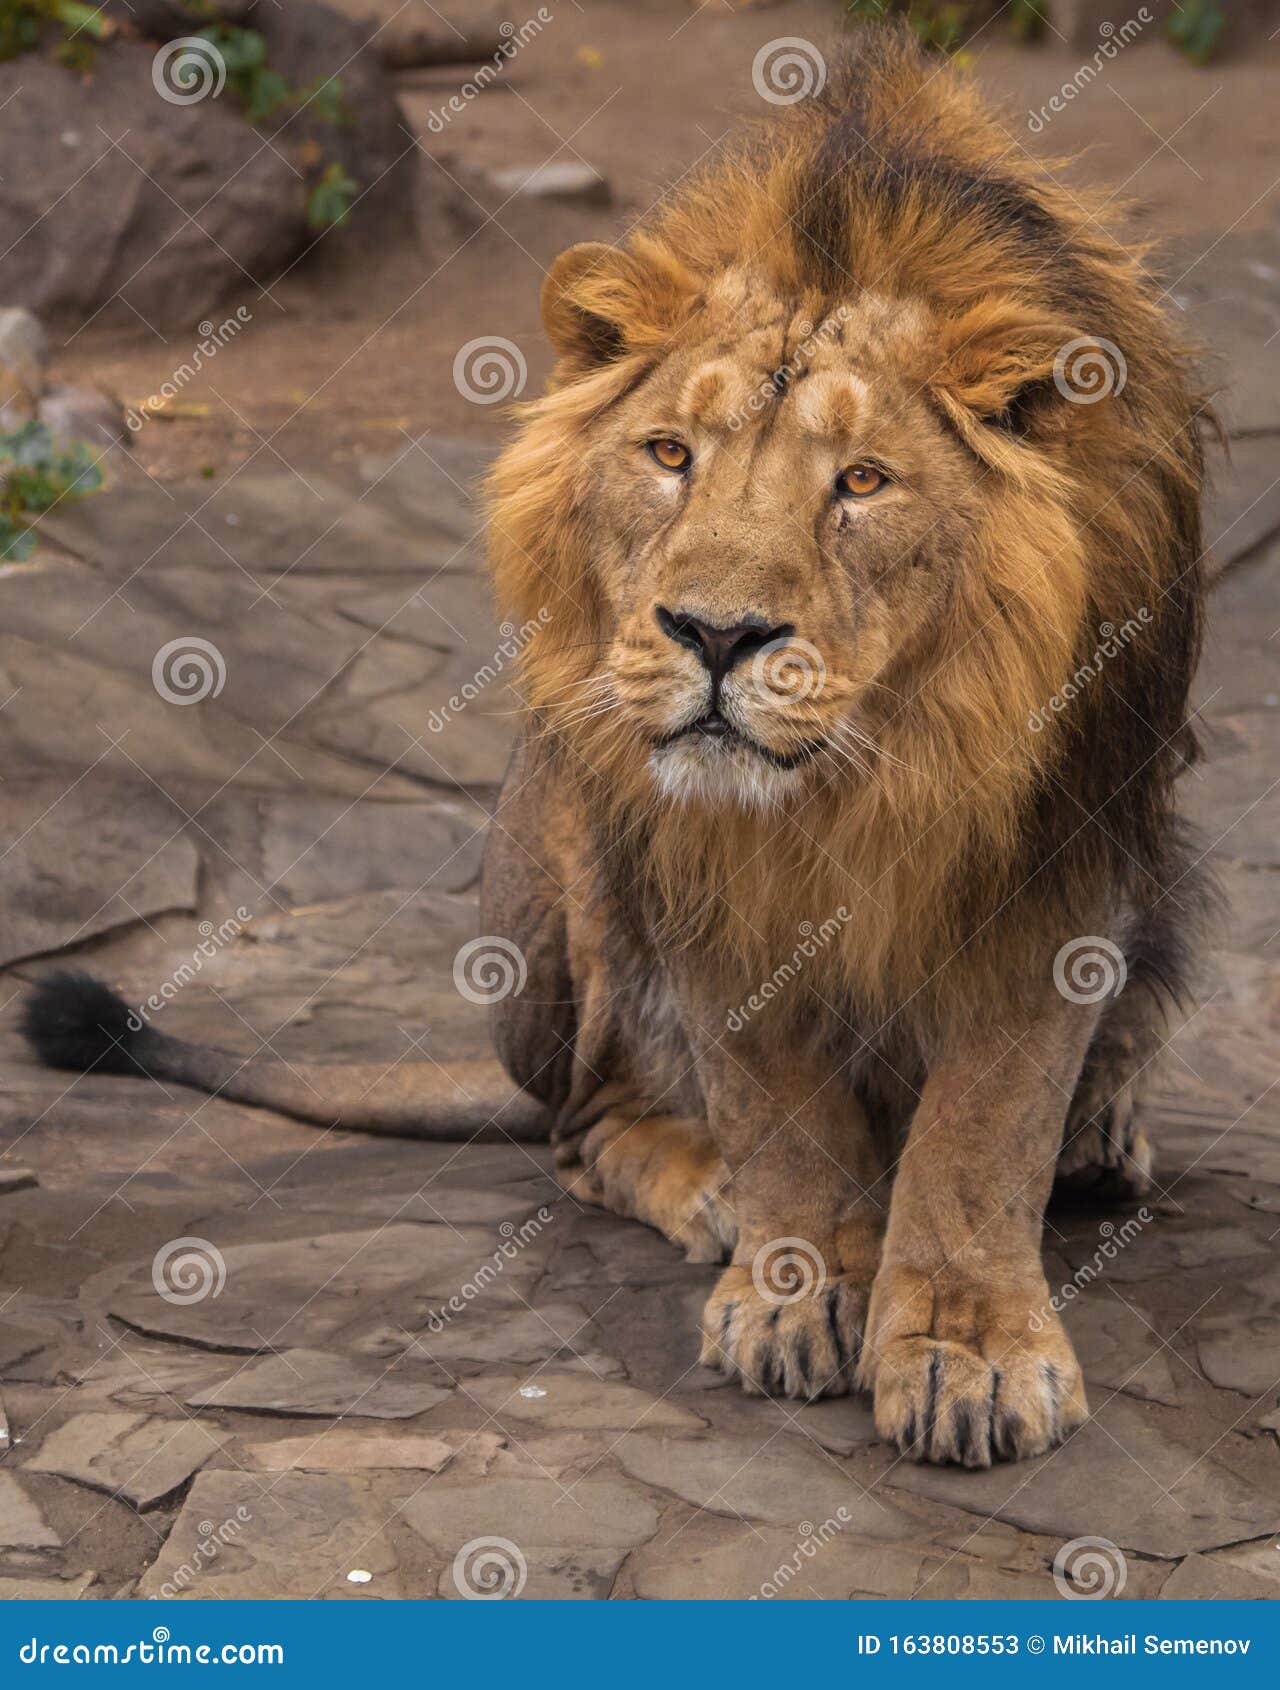 Le Lion Est Un Grand Chaton Predateur Fort Et Beau Avec Une Magnifique Criniere De Cheveux Image Stock Image Du Affaires Laines